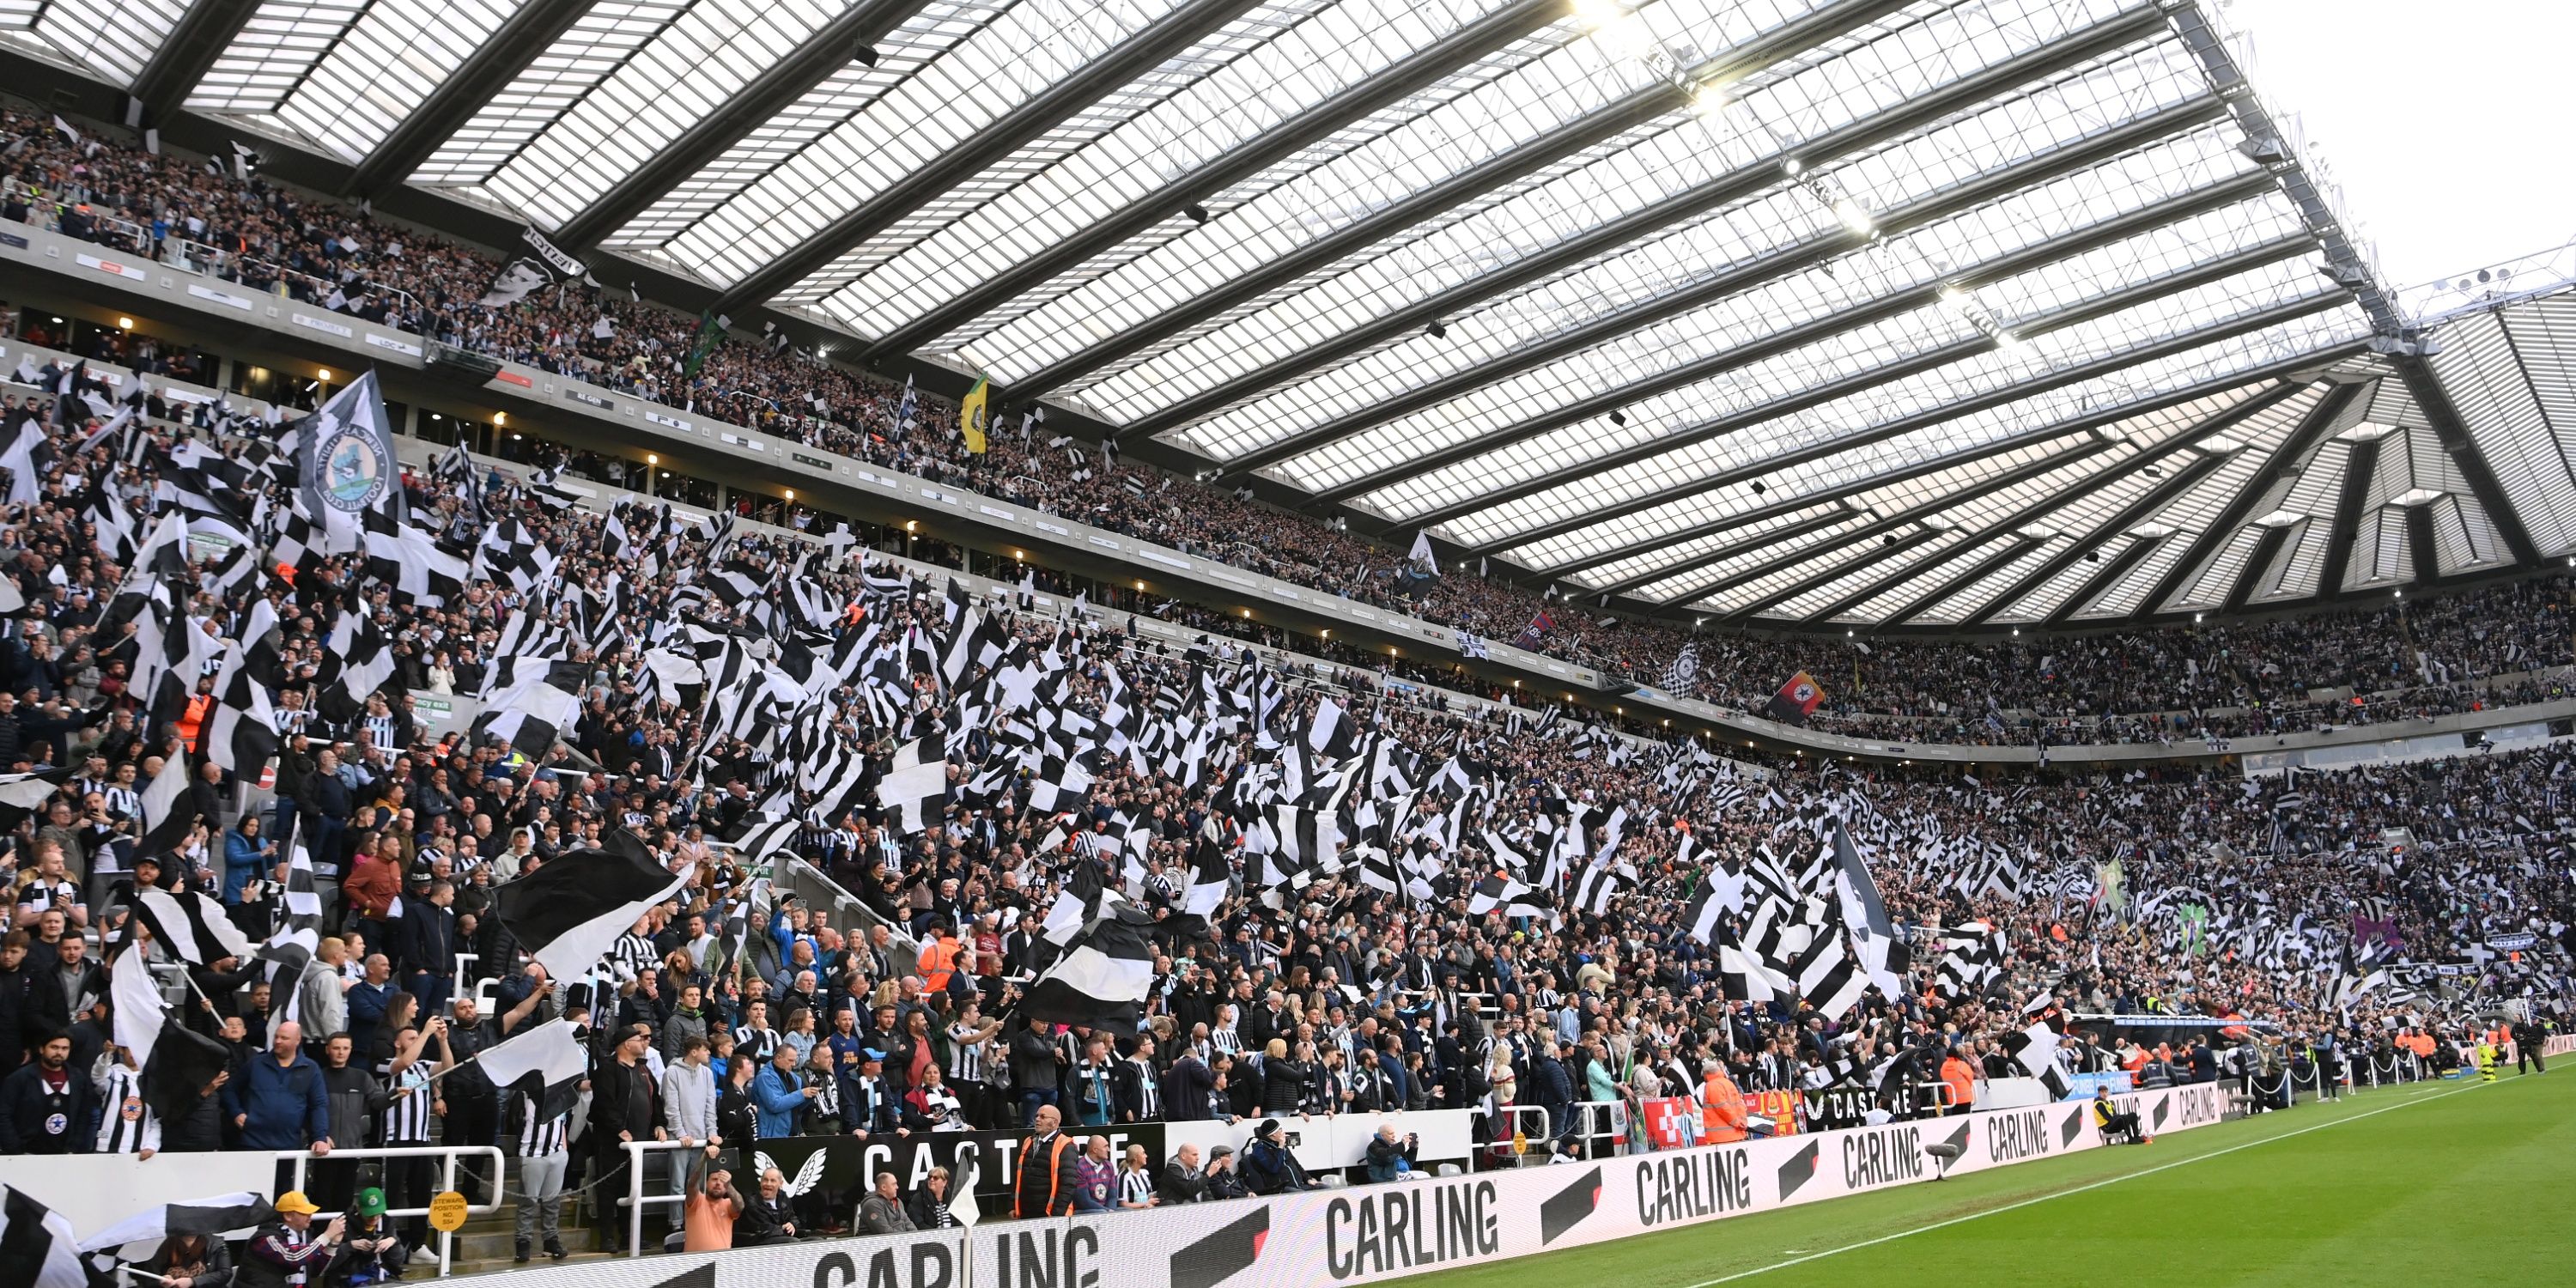 Newcastle fans at St James' Park.